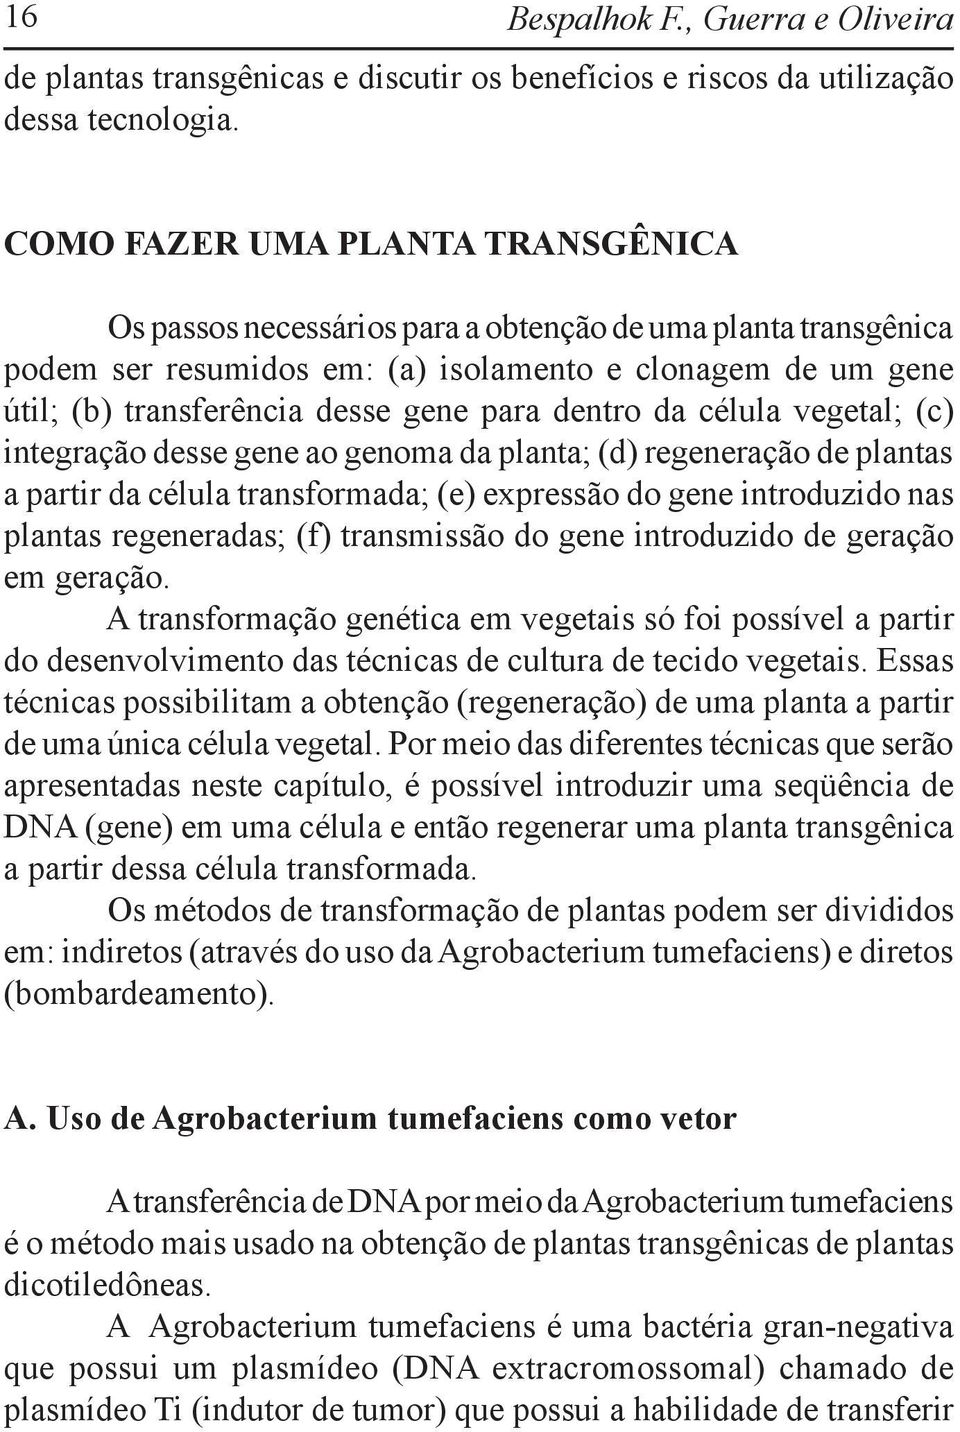 dentro da célula vegetal; (c) integração desse gene ao genoma da planta; (d) regeneração de plantas a partir da célula transformada; (e) expressão do gene introduzido nas plantas regeneradas; (f)